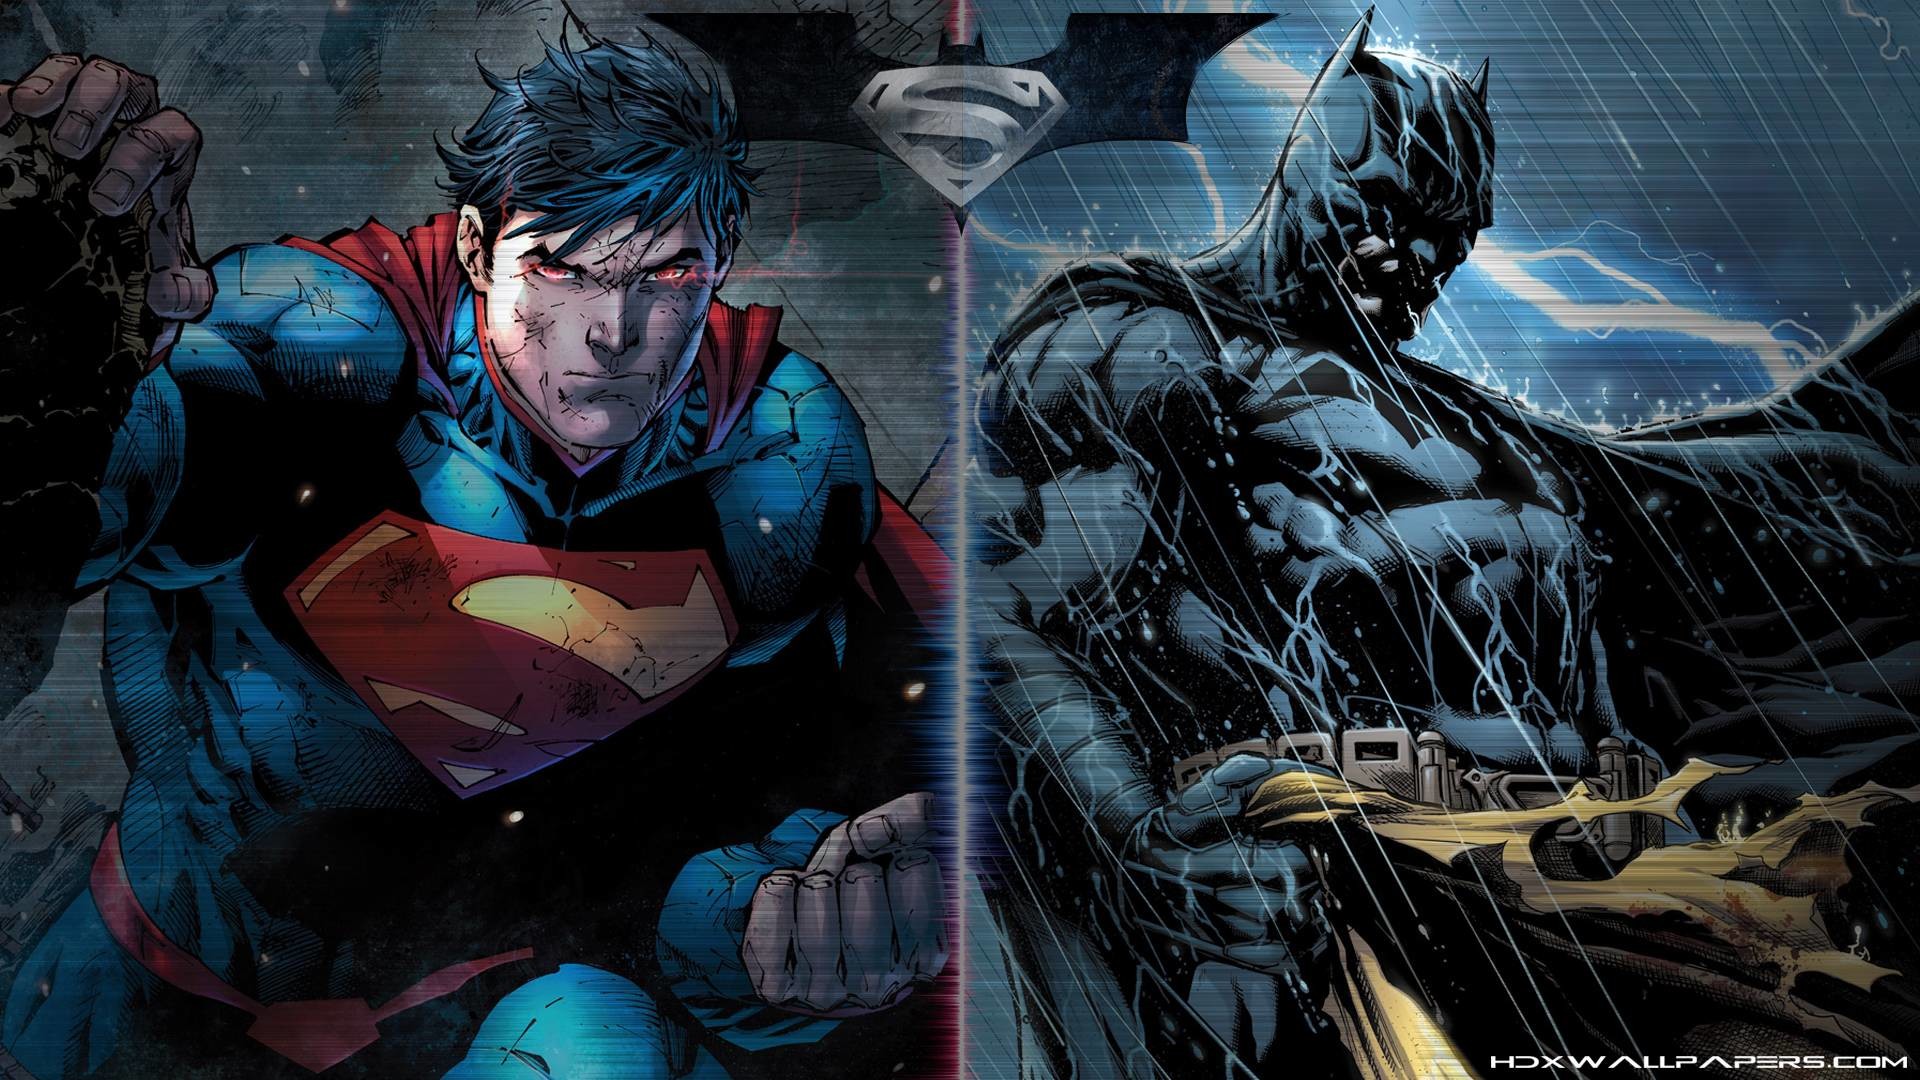 Wallpapers For > Batman Vs Superman 2015 Wallpaper